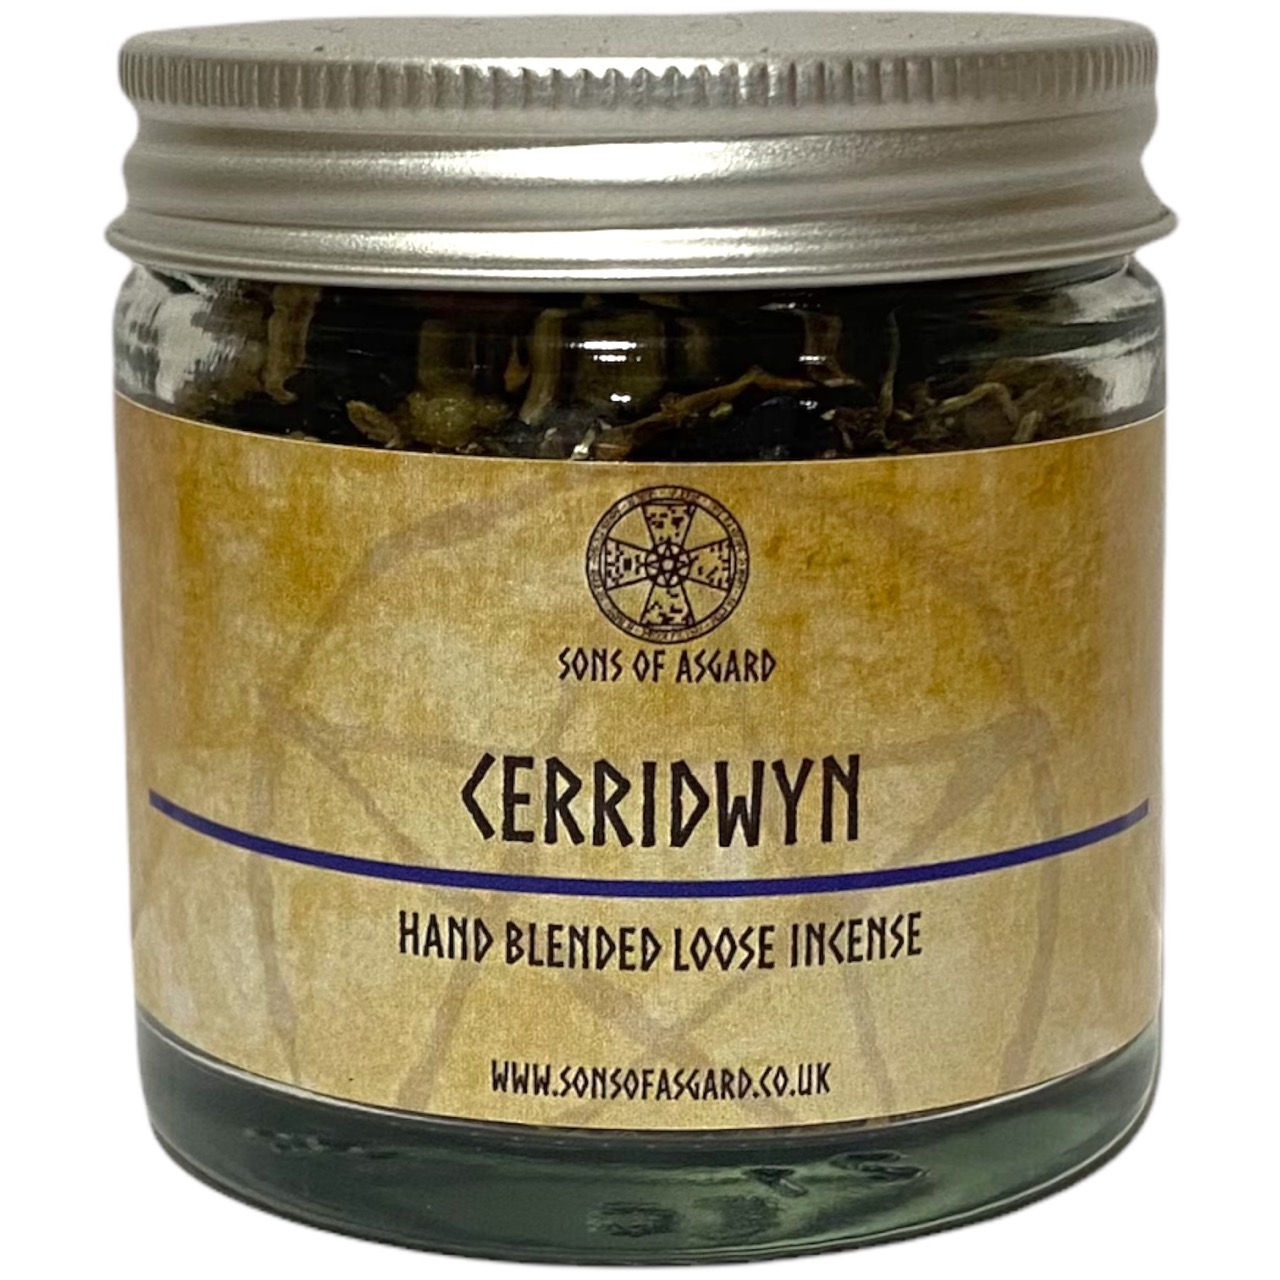 Cerridwyn - Blended Loose Incense